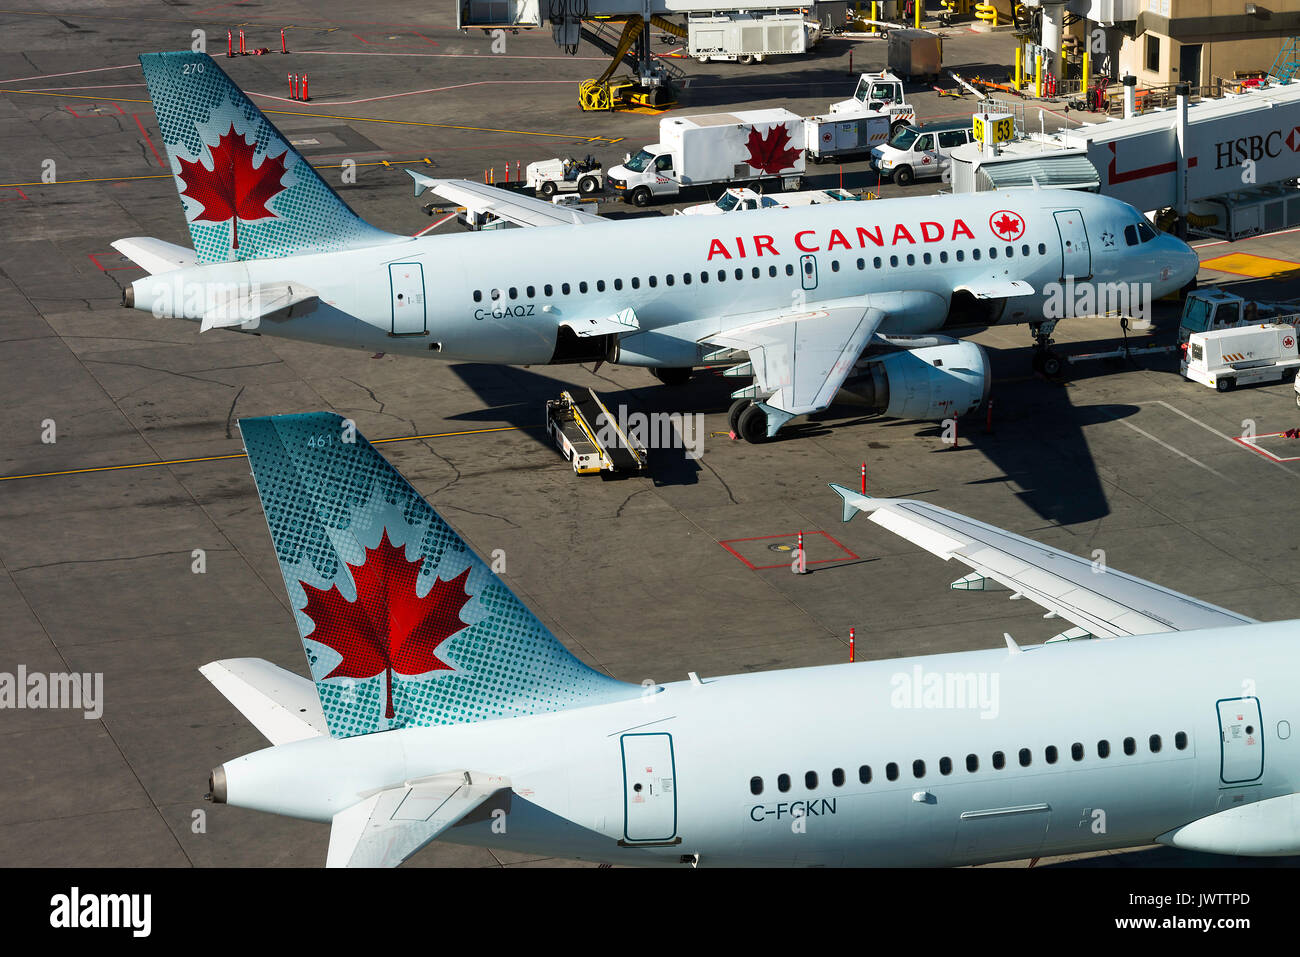 Air Canada Airline Airbus A 321-211 und 319-114 Verkehrsflugzeuge C-FGKN und C-GAQZ auf steht am internationalen Flughafen von Calgary Alberta Kanada Stockfoto